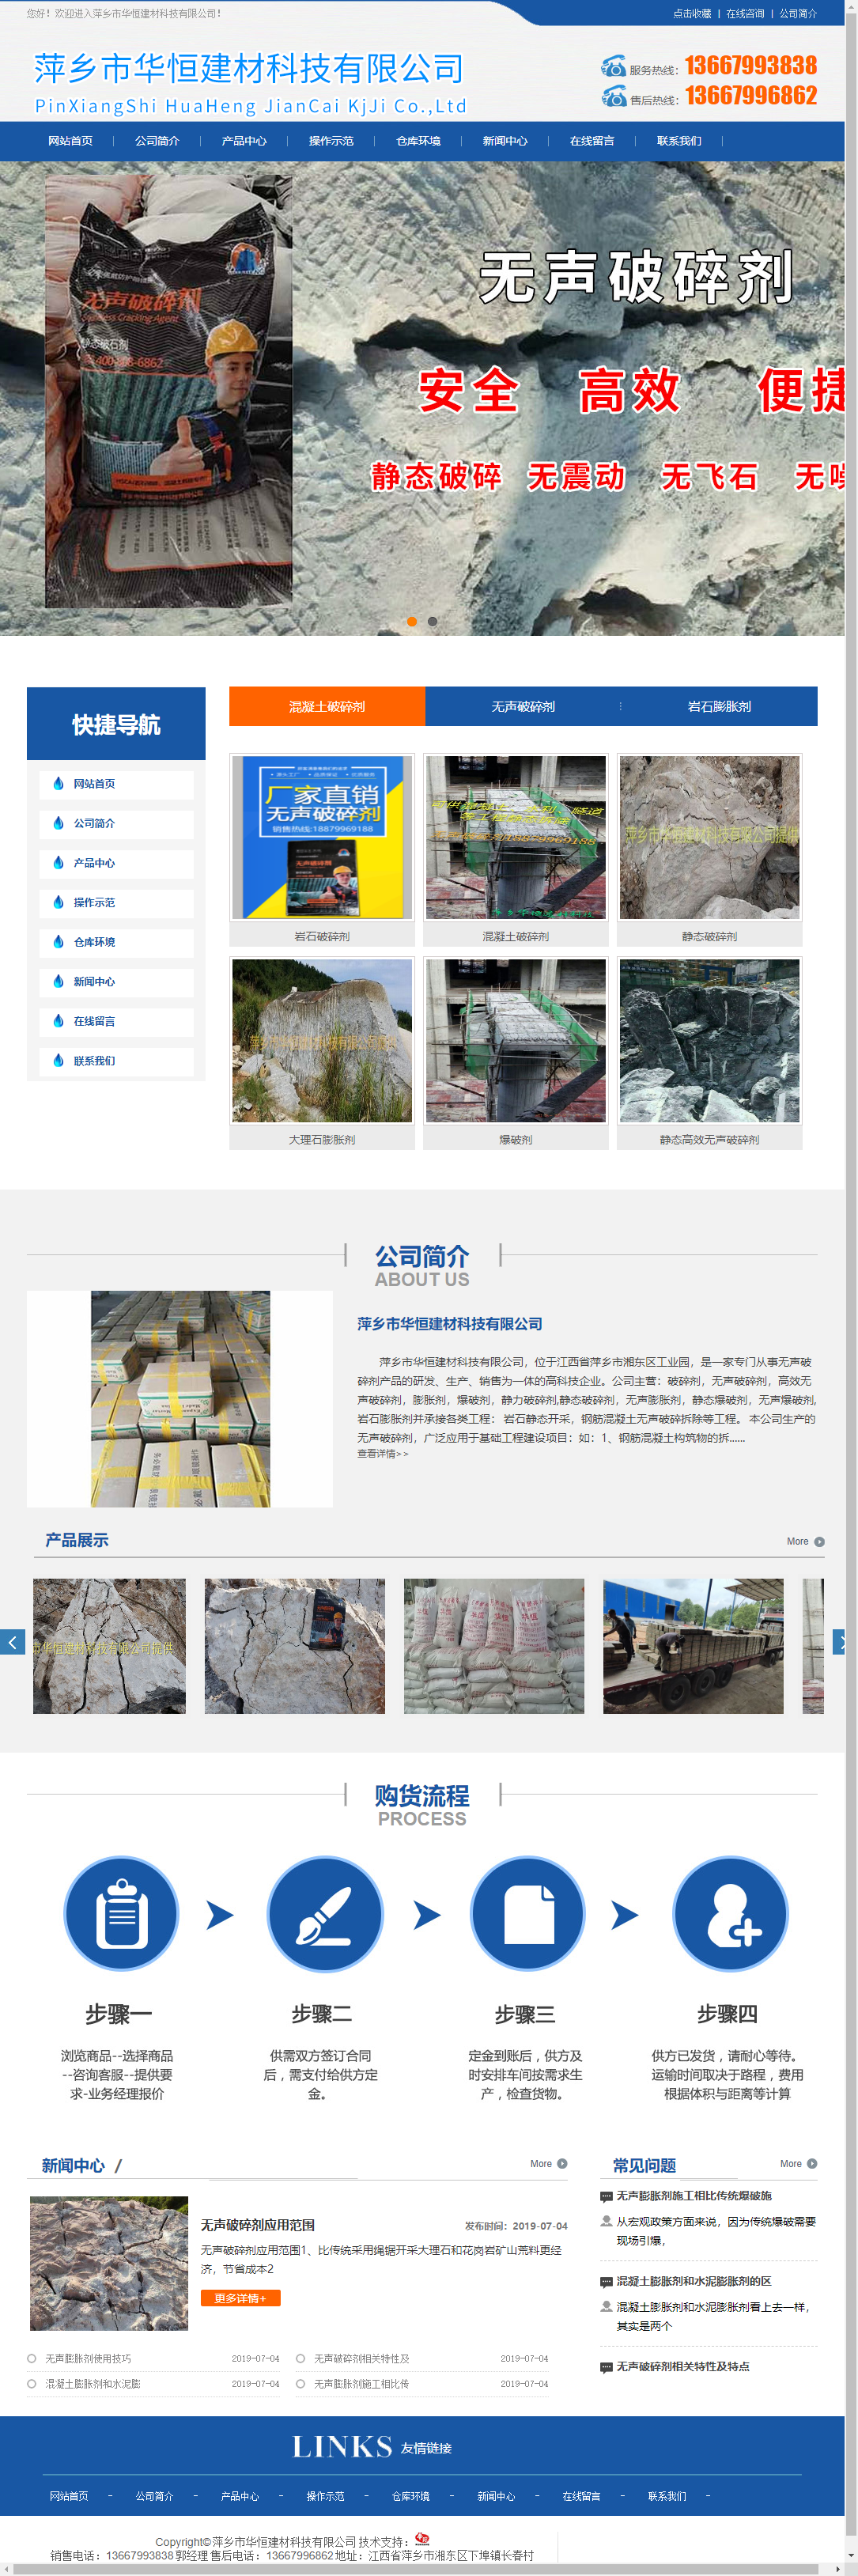 萍乡市华恒建材科技有限公司网站案例